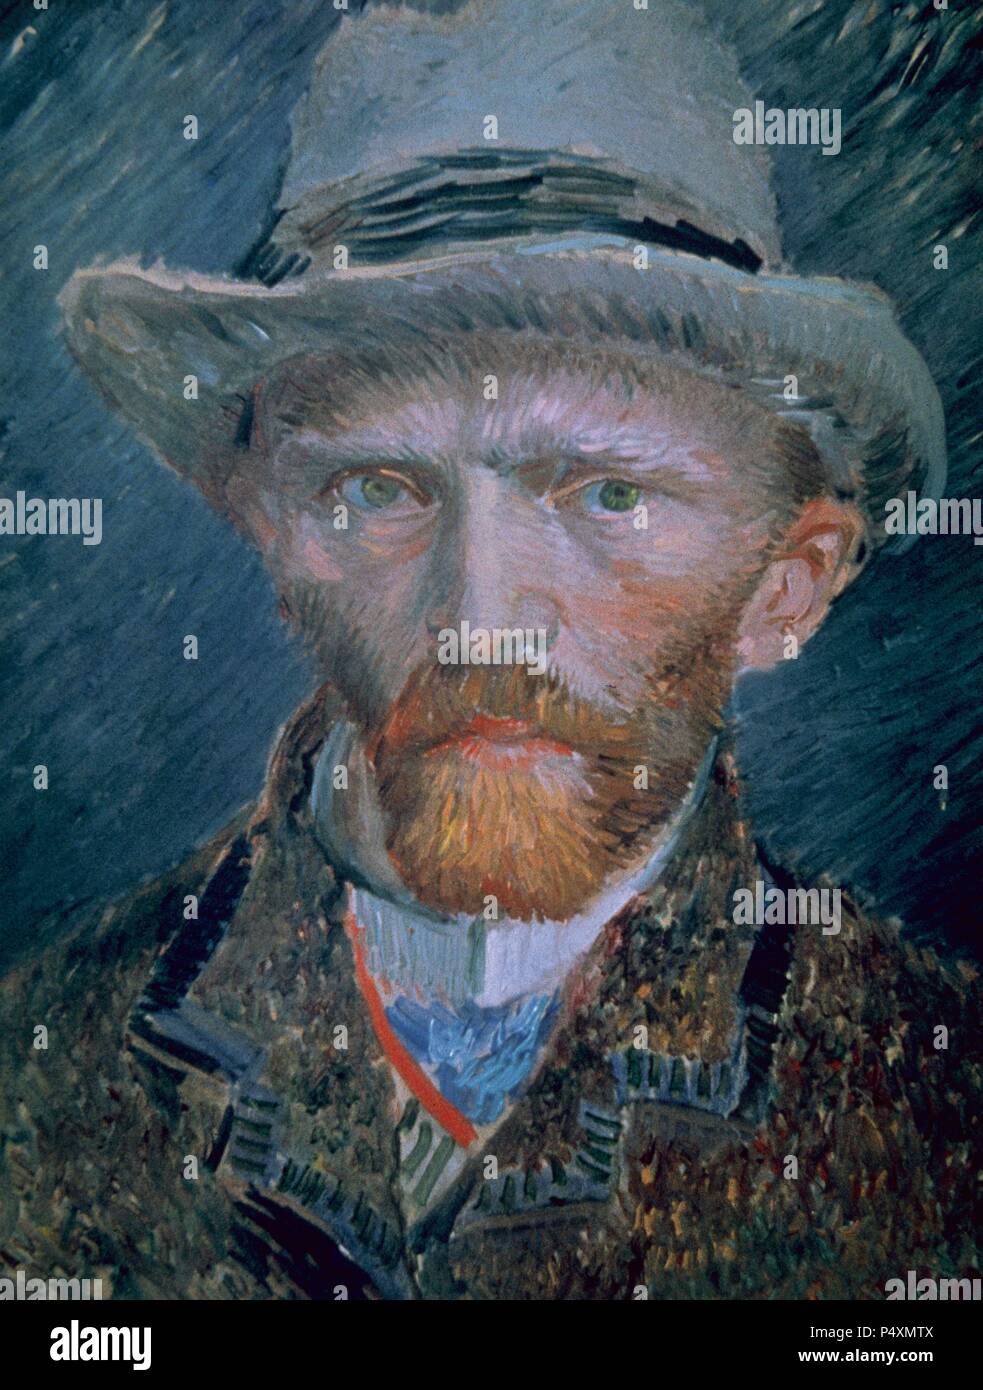 Vincent Van Gogh (1853-1890). Niederländische post-impressionistischen Maler. Selbstportrait. Büste mit braunen Jacke und grauen Hut. Öl auf Pappe. Rijksmuseum. Amsterdam. Niederlande. Stockfoto